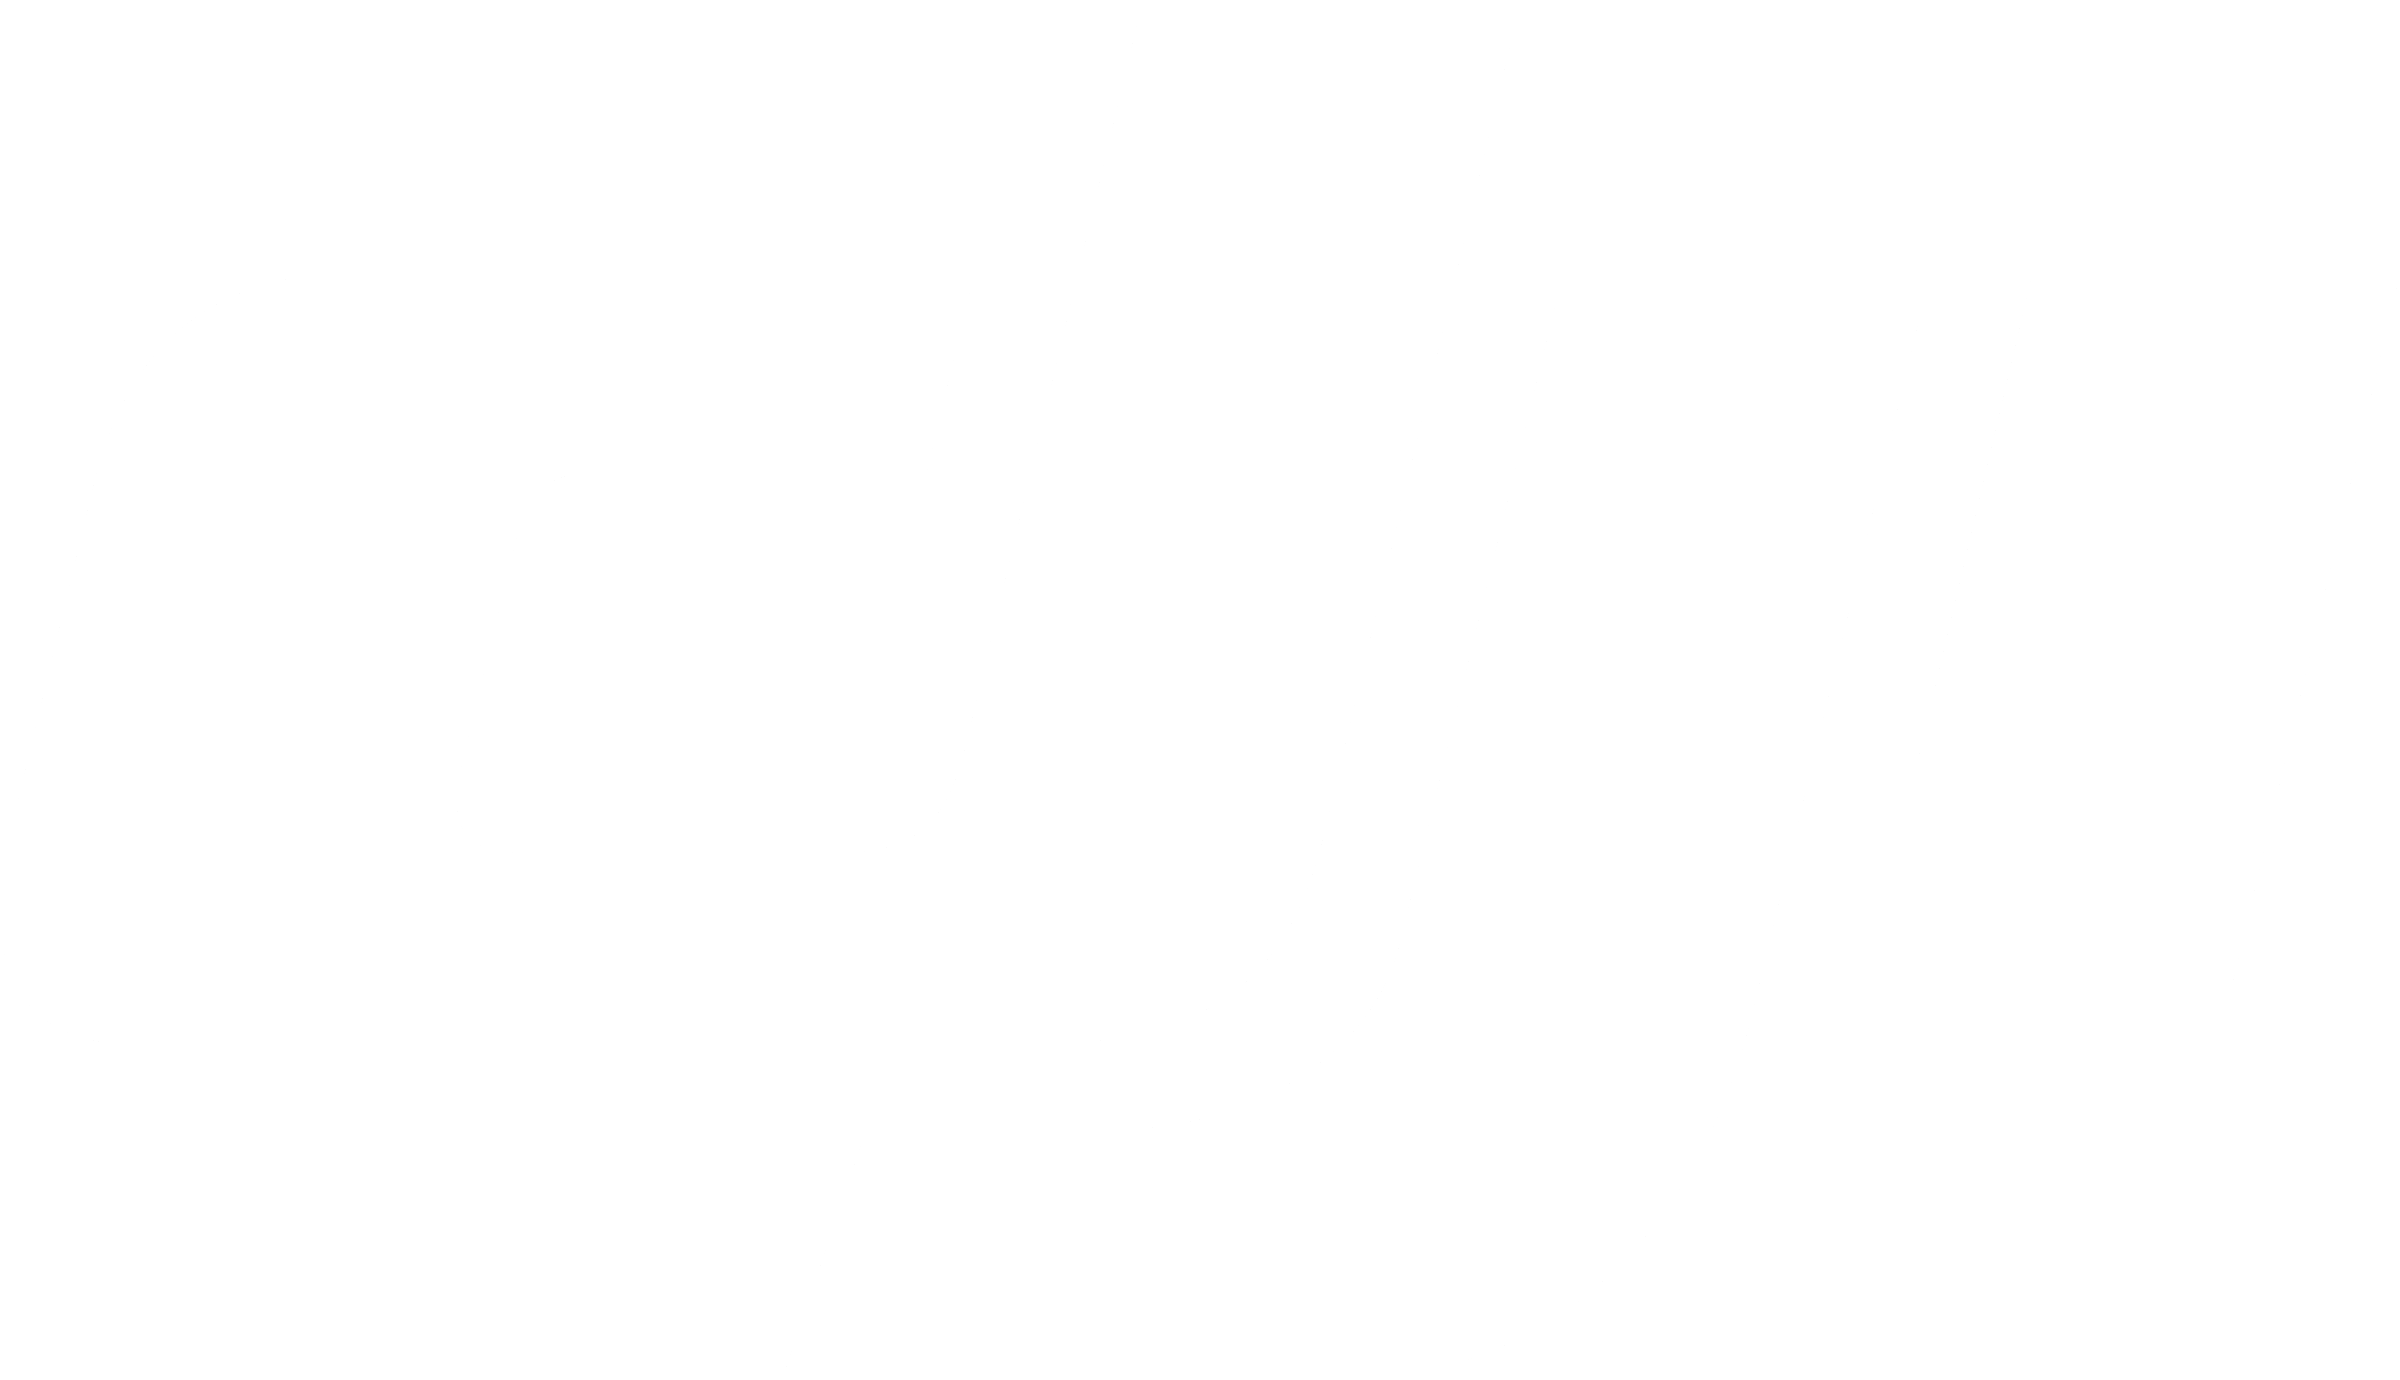 dji-1-logo-black-and-white.png